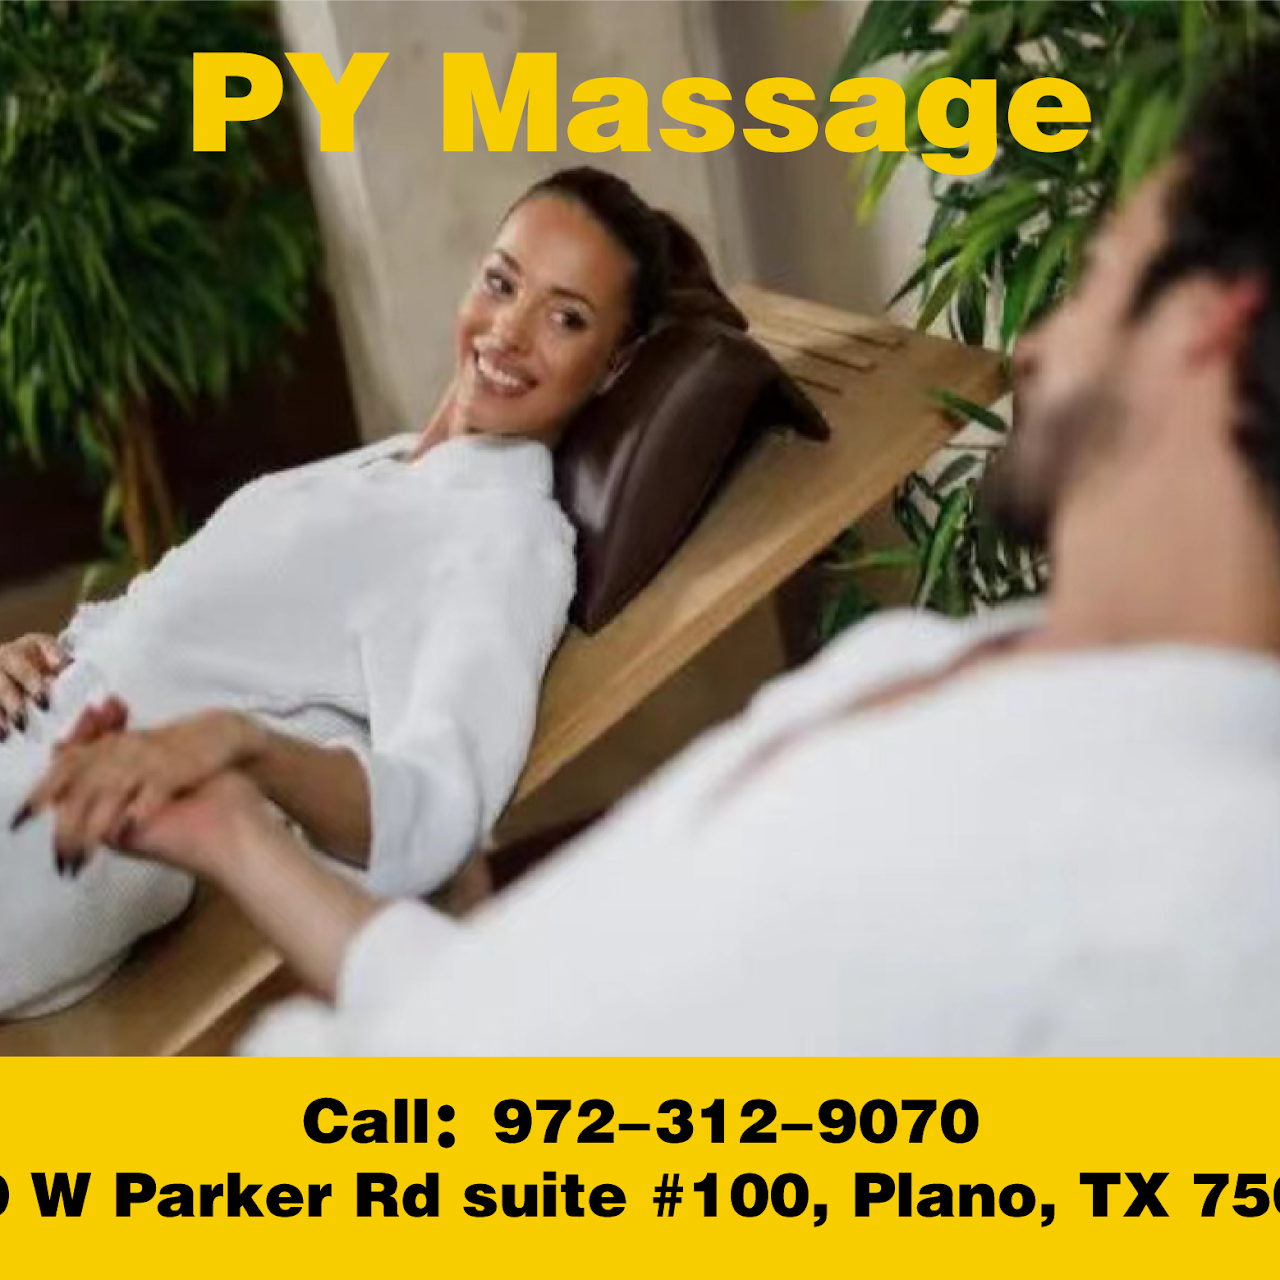 Py massage